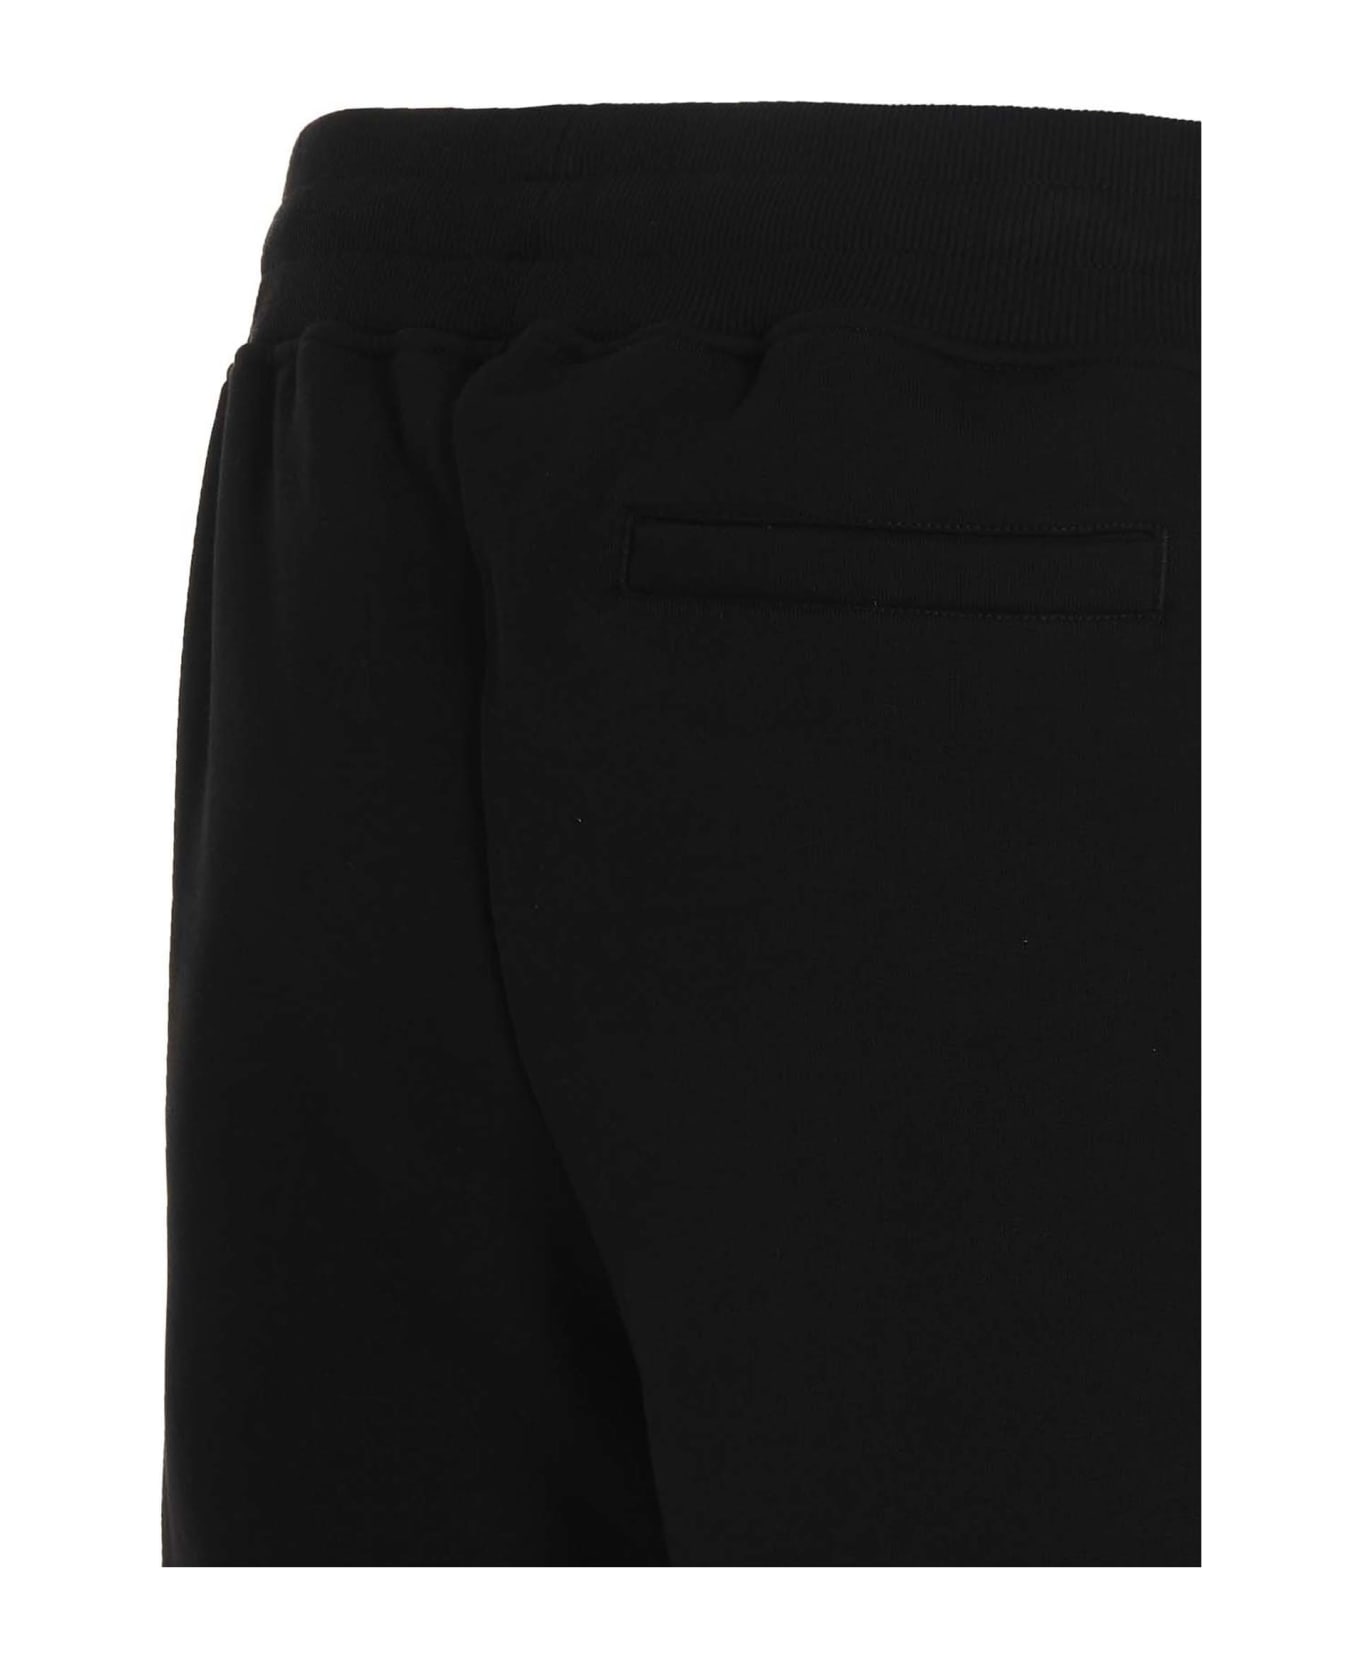 A-COLD-WALL Logo Bermuda Shorts - Black  